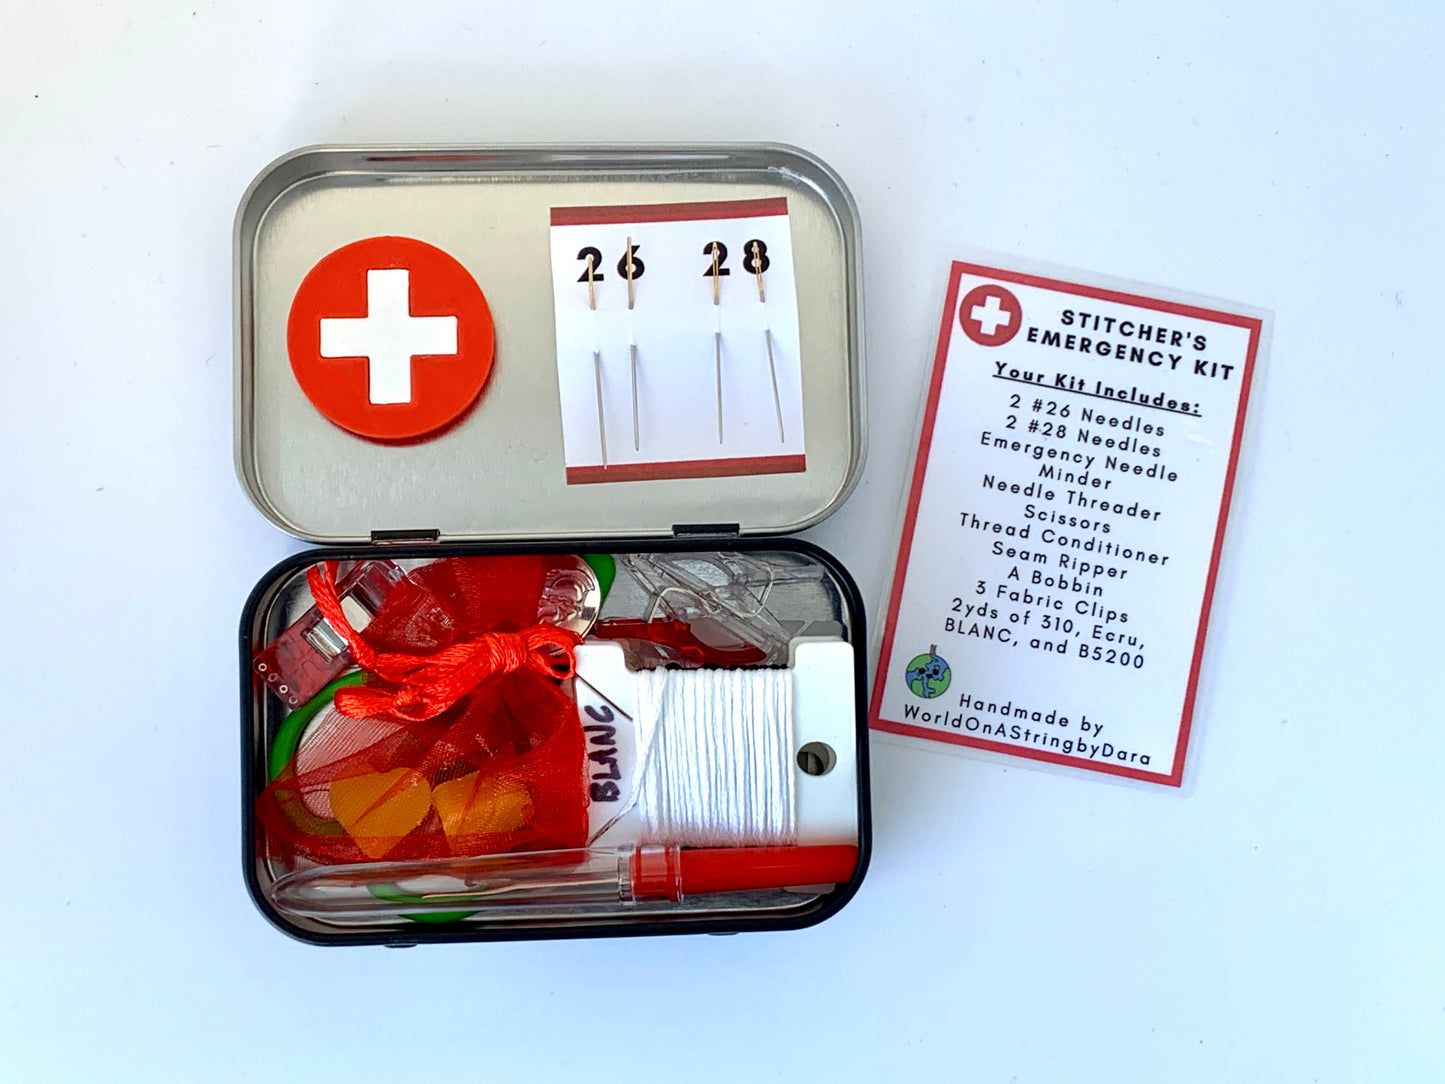 Stitcher's Emergency Kit